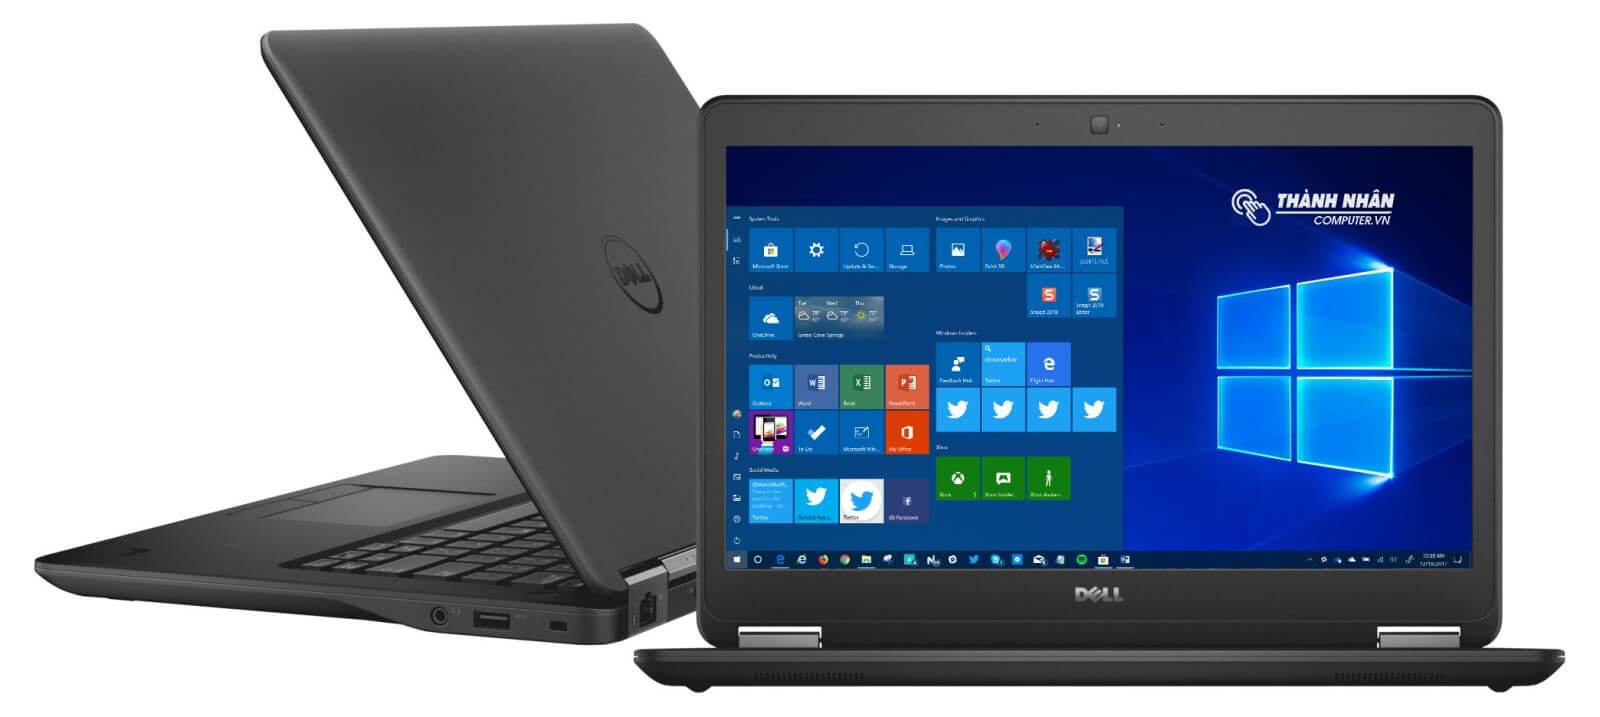 Laptop Dell E7450 giá rẻ